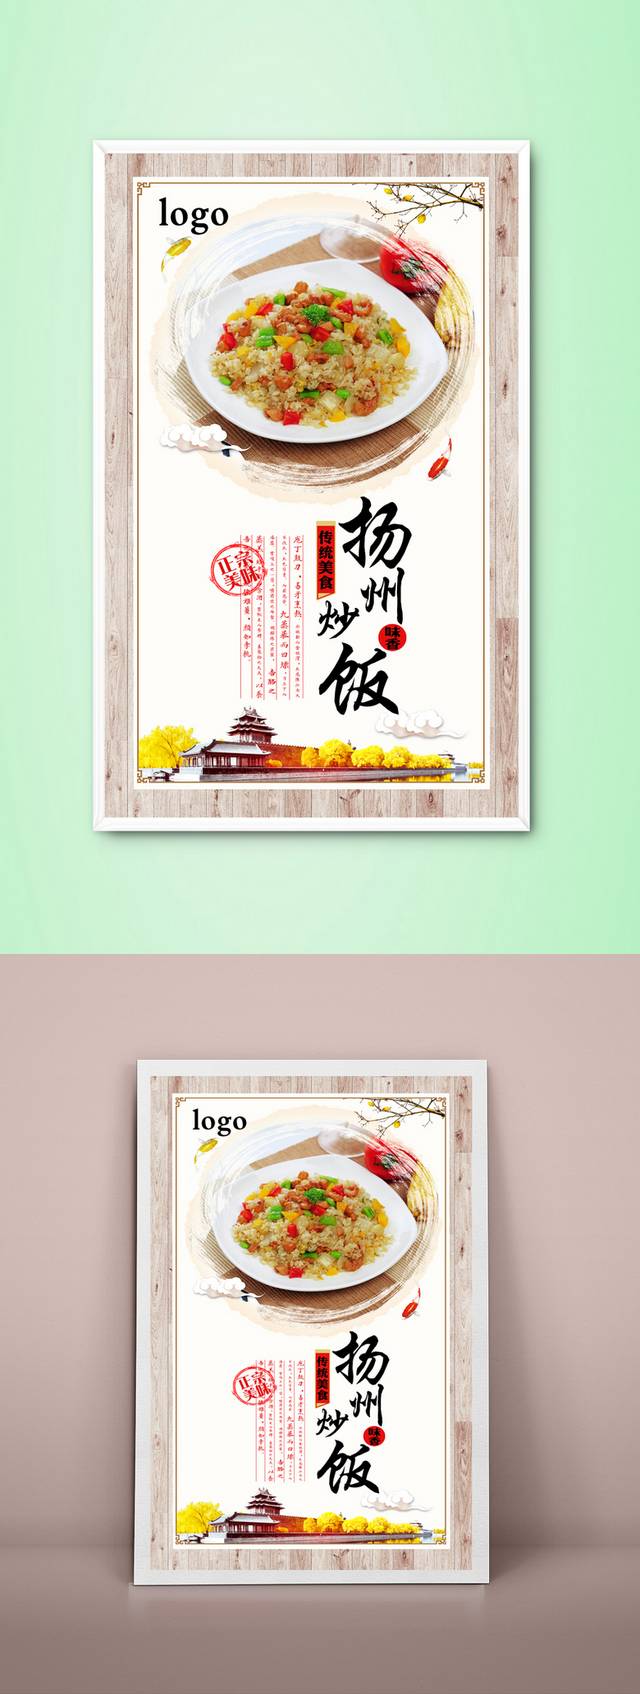 古典中国风扬州炒饭海报设计